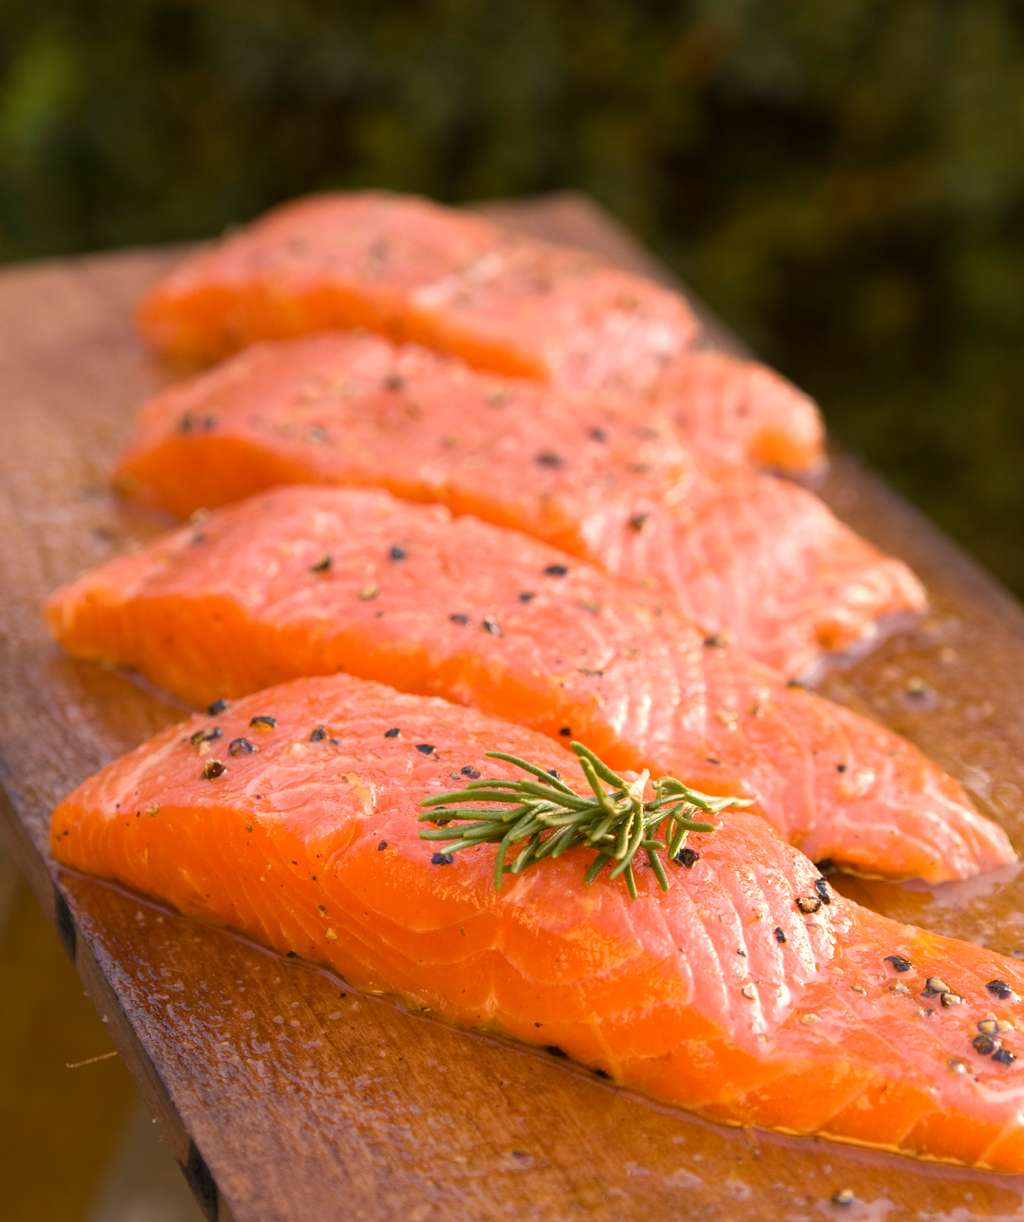 Des bons filets provenant de saumons OGM AquAdvantage® seront probablement bientôt dans les assiettes des consommateurs américains. © AquaBounty